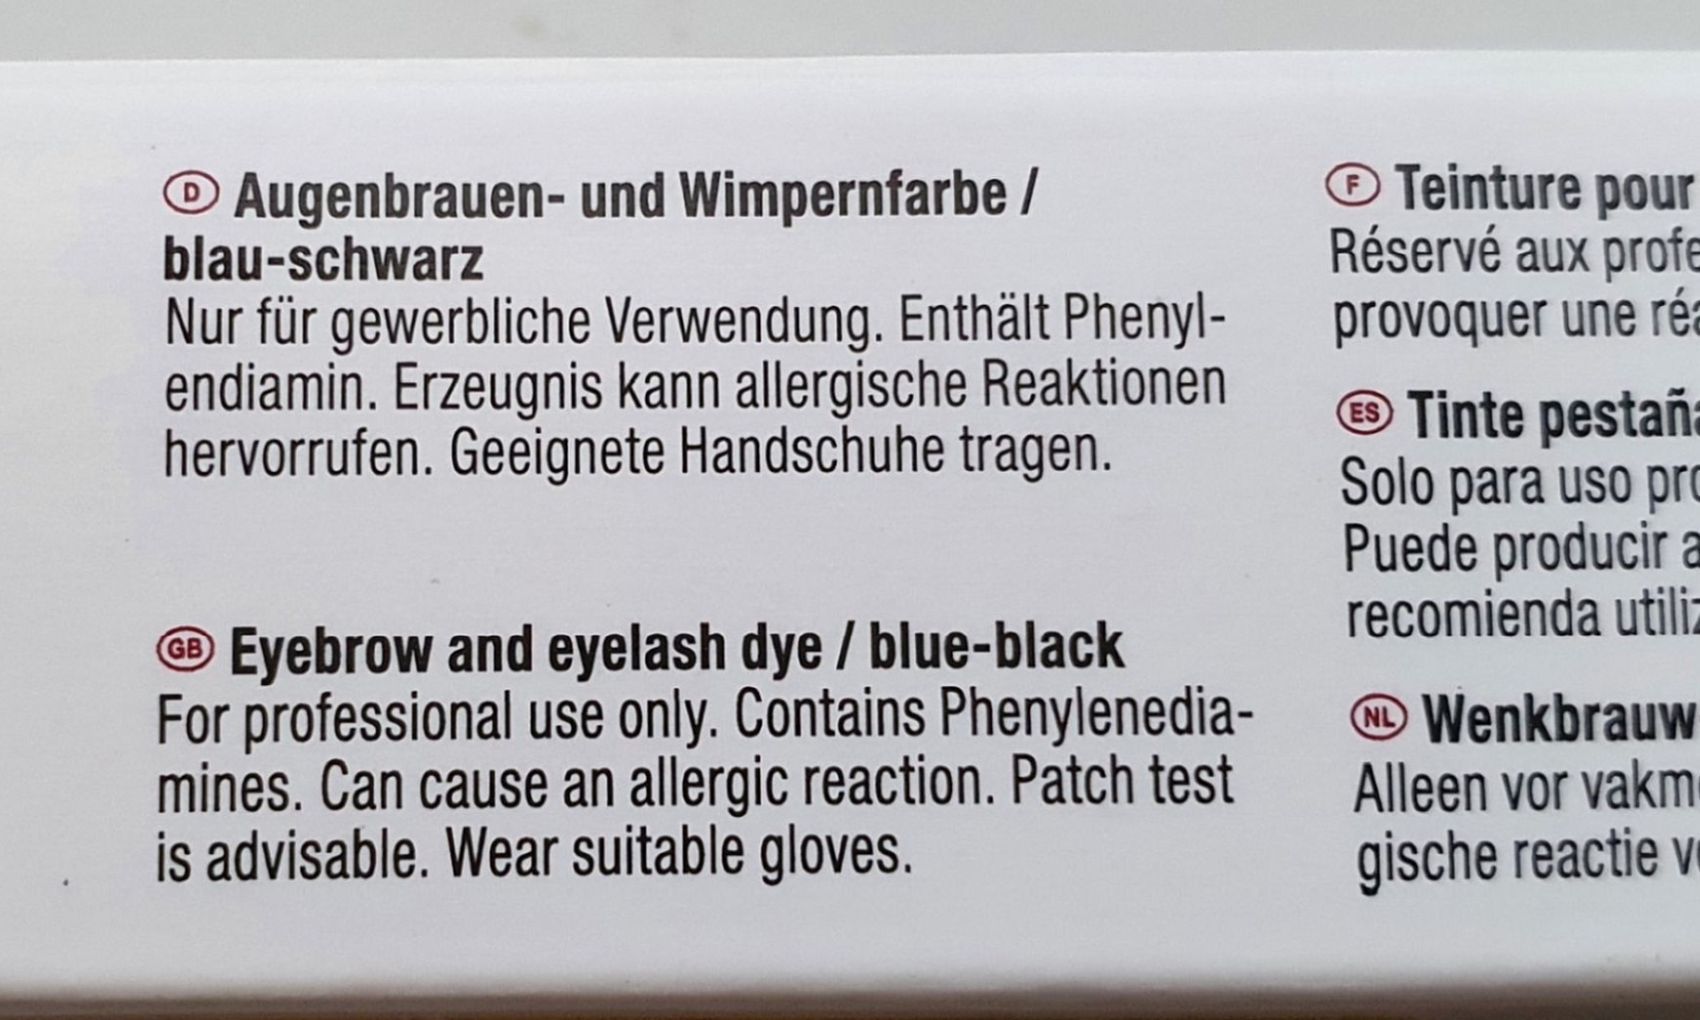 Auf dem Bild ist die Verpackung einer Augenbrauen- und Wimpernfarbe mit folgenden Hinweisen zu sehen: “Nur für gewerbliche Verwendung. Enthält Phenylendiamin. Erzeugnis kann alllergische Reaktionen hervorrufen. Geeignete Handschuhe tragen.”